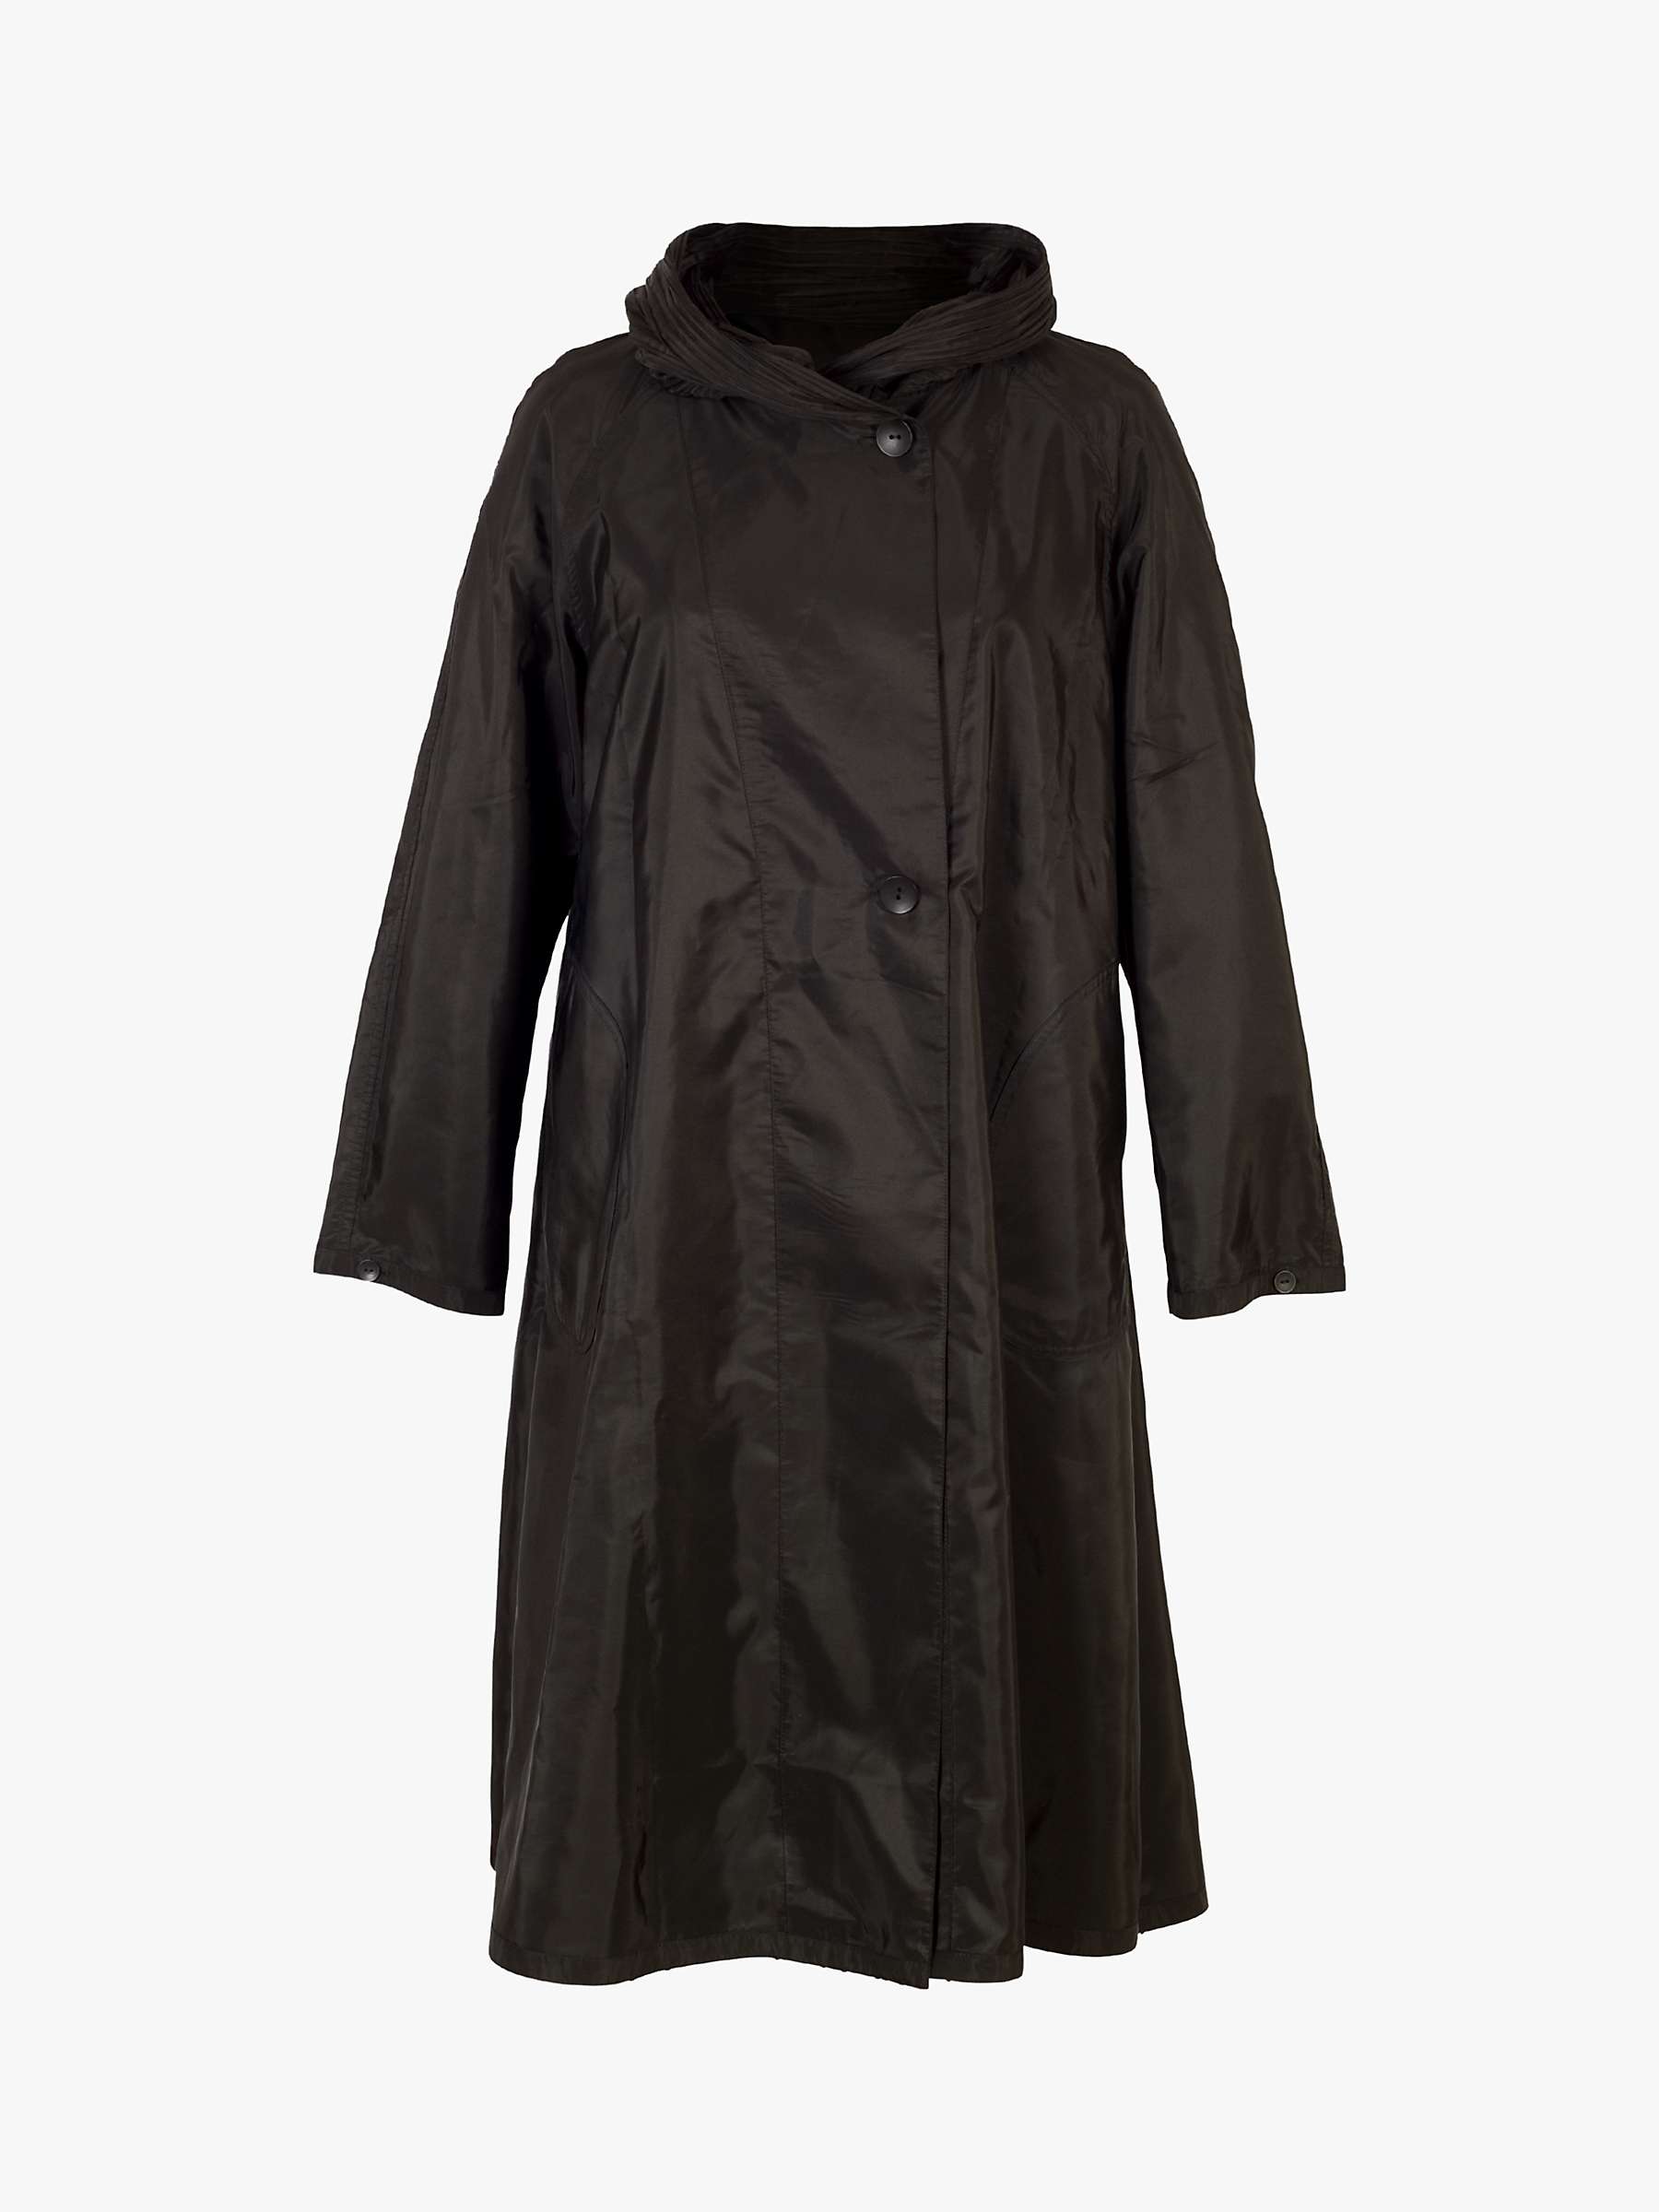 Buy chesca Velvet Embossed Reversible Raincoat Online at johnlewis.com